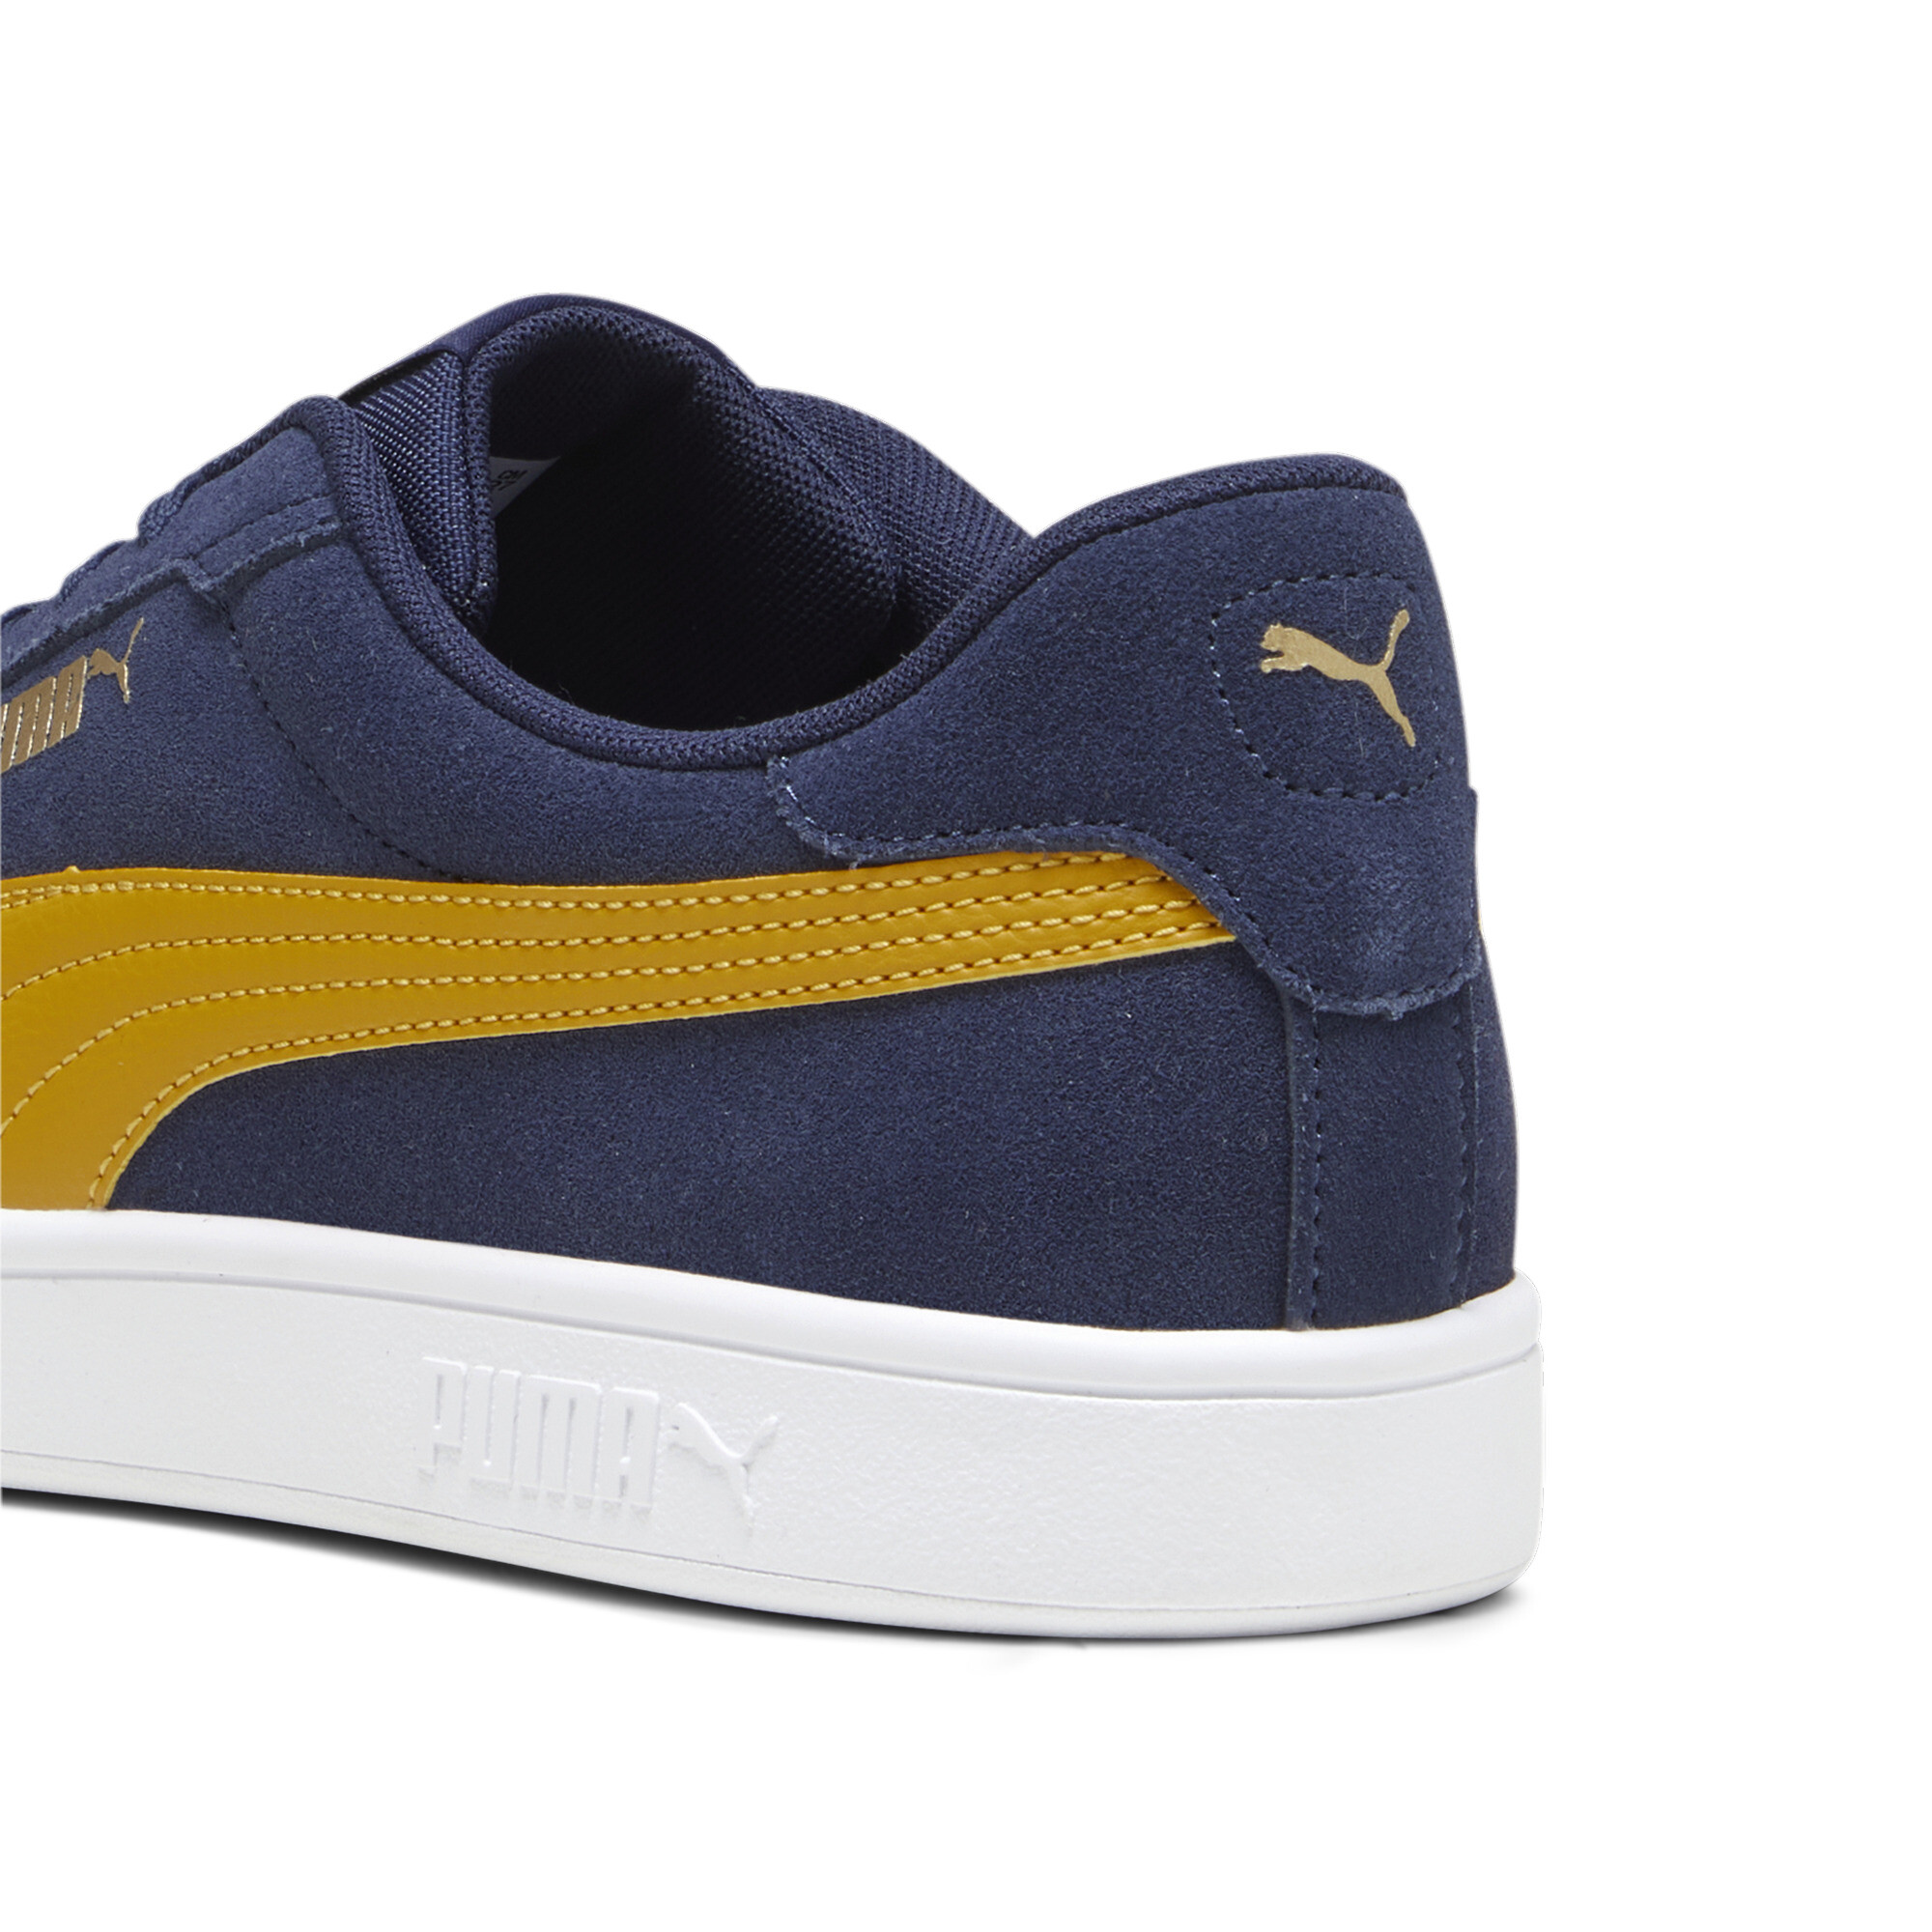 Puma Smash 3.0 Sneakers, Blue, Size 37, Shoes